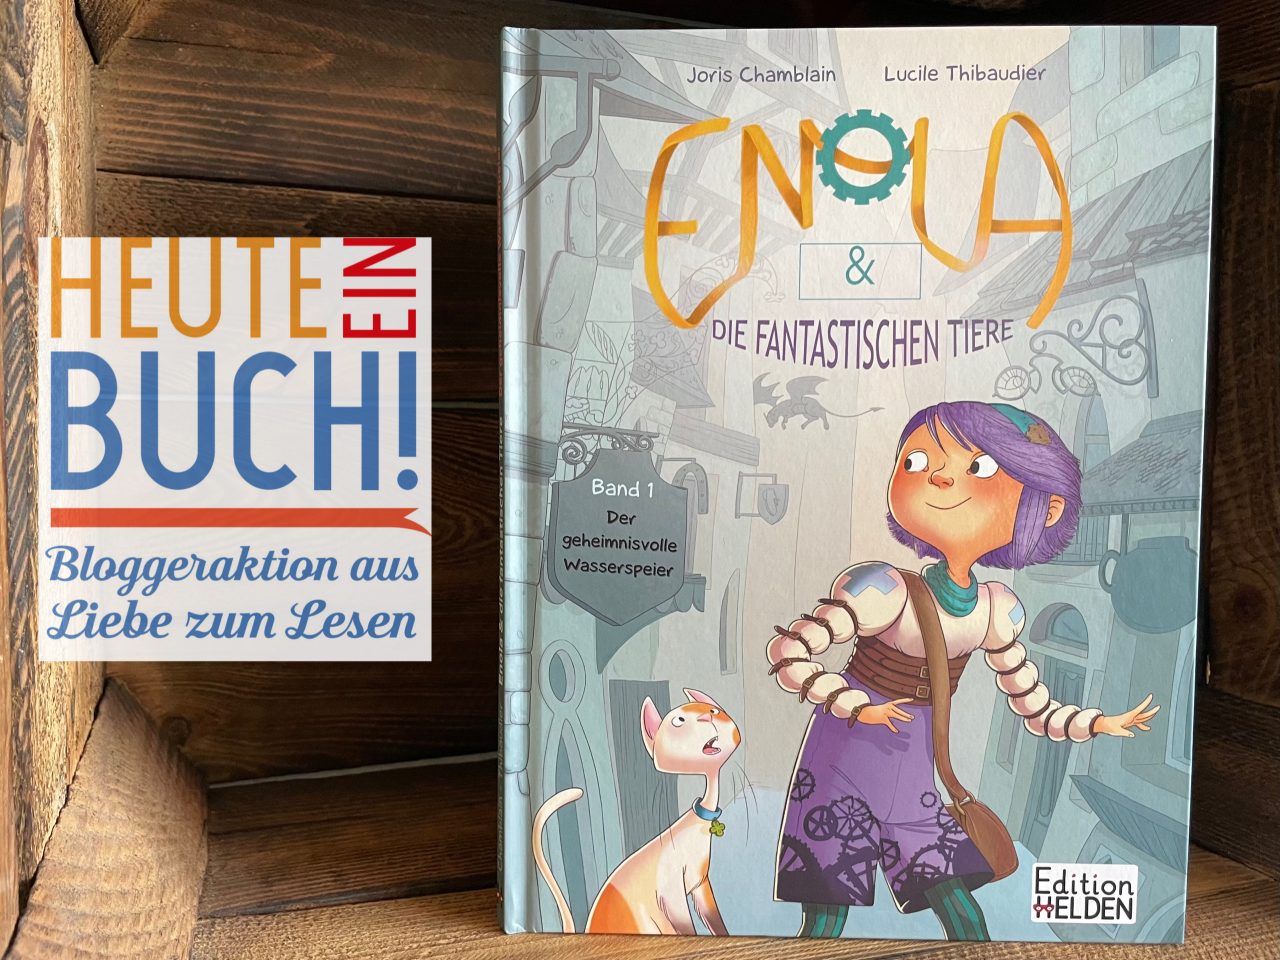 das Kindercomicbuch "Enola & die fantastischen Tiere" in einer Holzkiste stehend mit dem "Heute ein Buch"-Logo